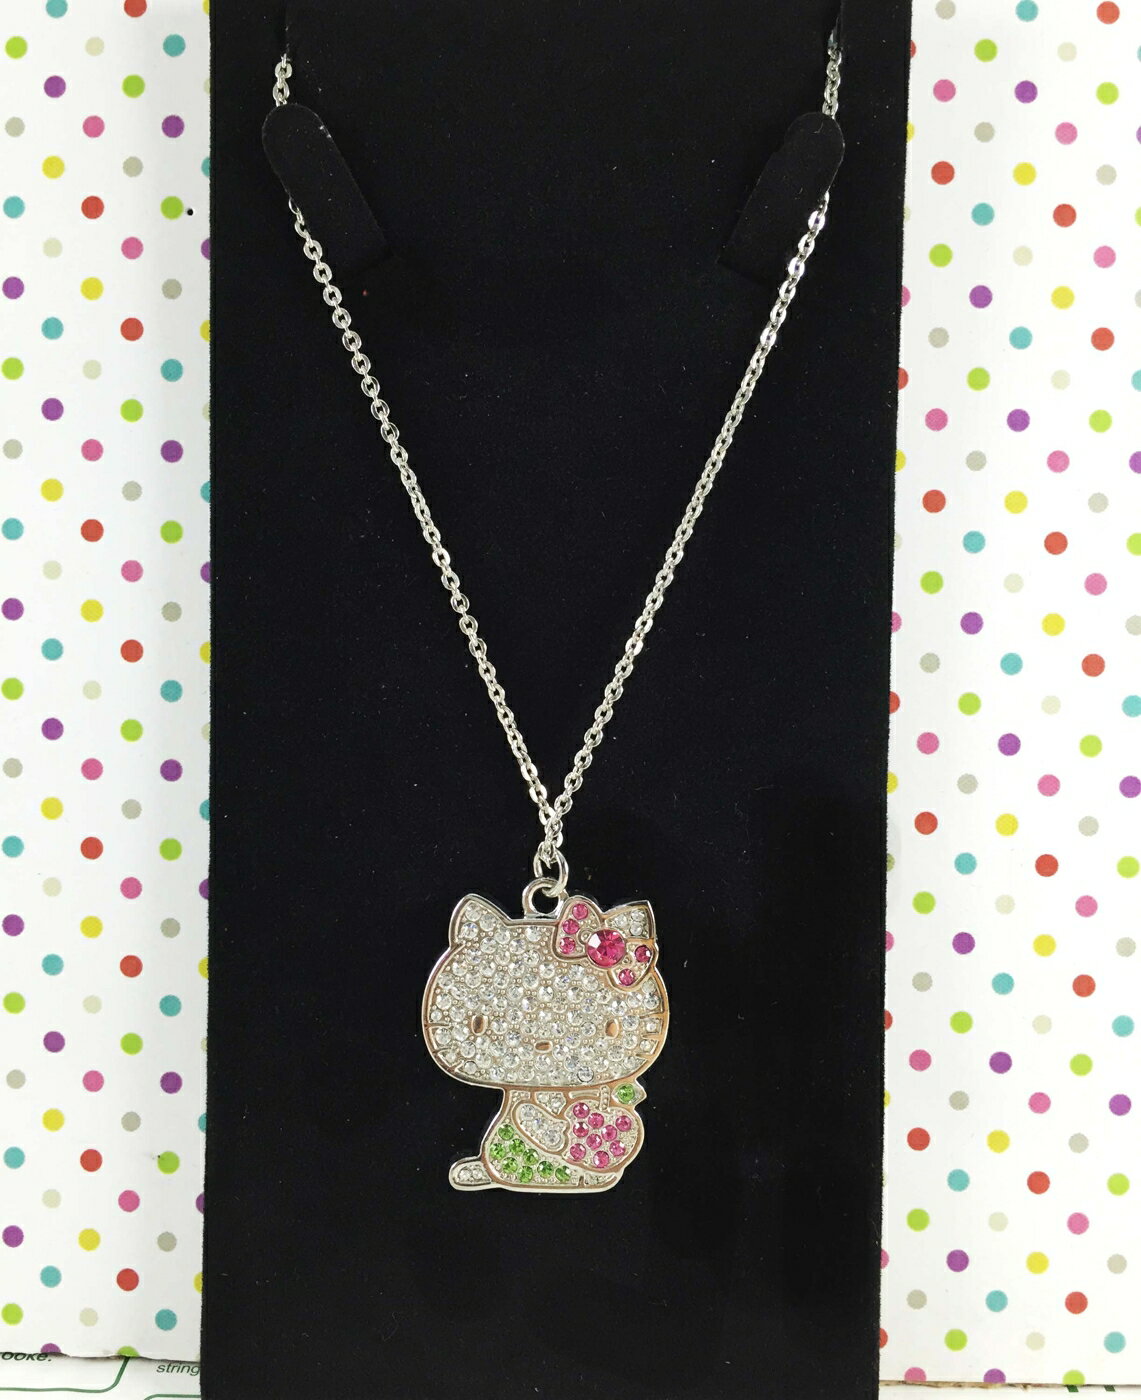 【震撼精品百貨】Hello Kitty 凱蒂貓 造型項鍊-綠蘋果 震撼日式精品百貨